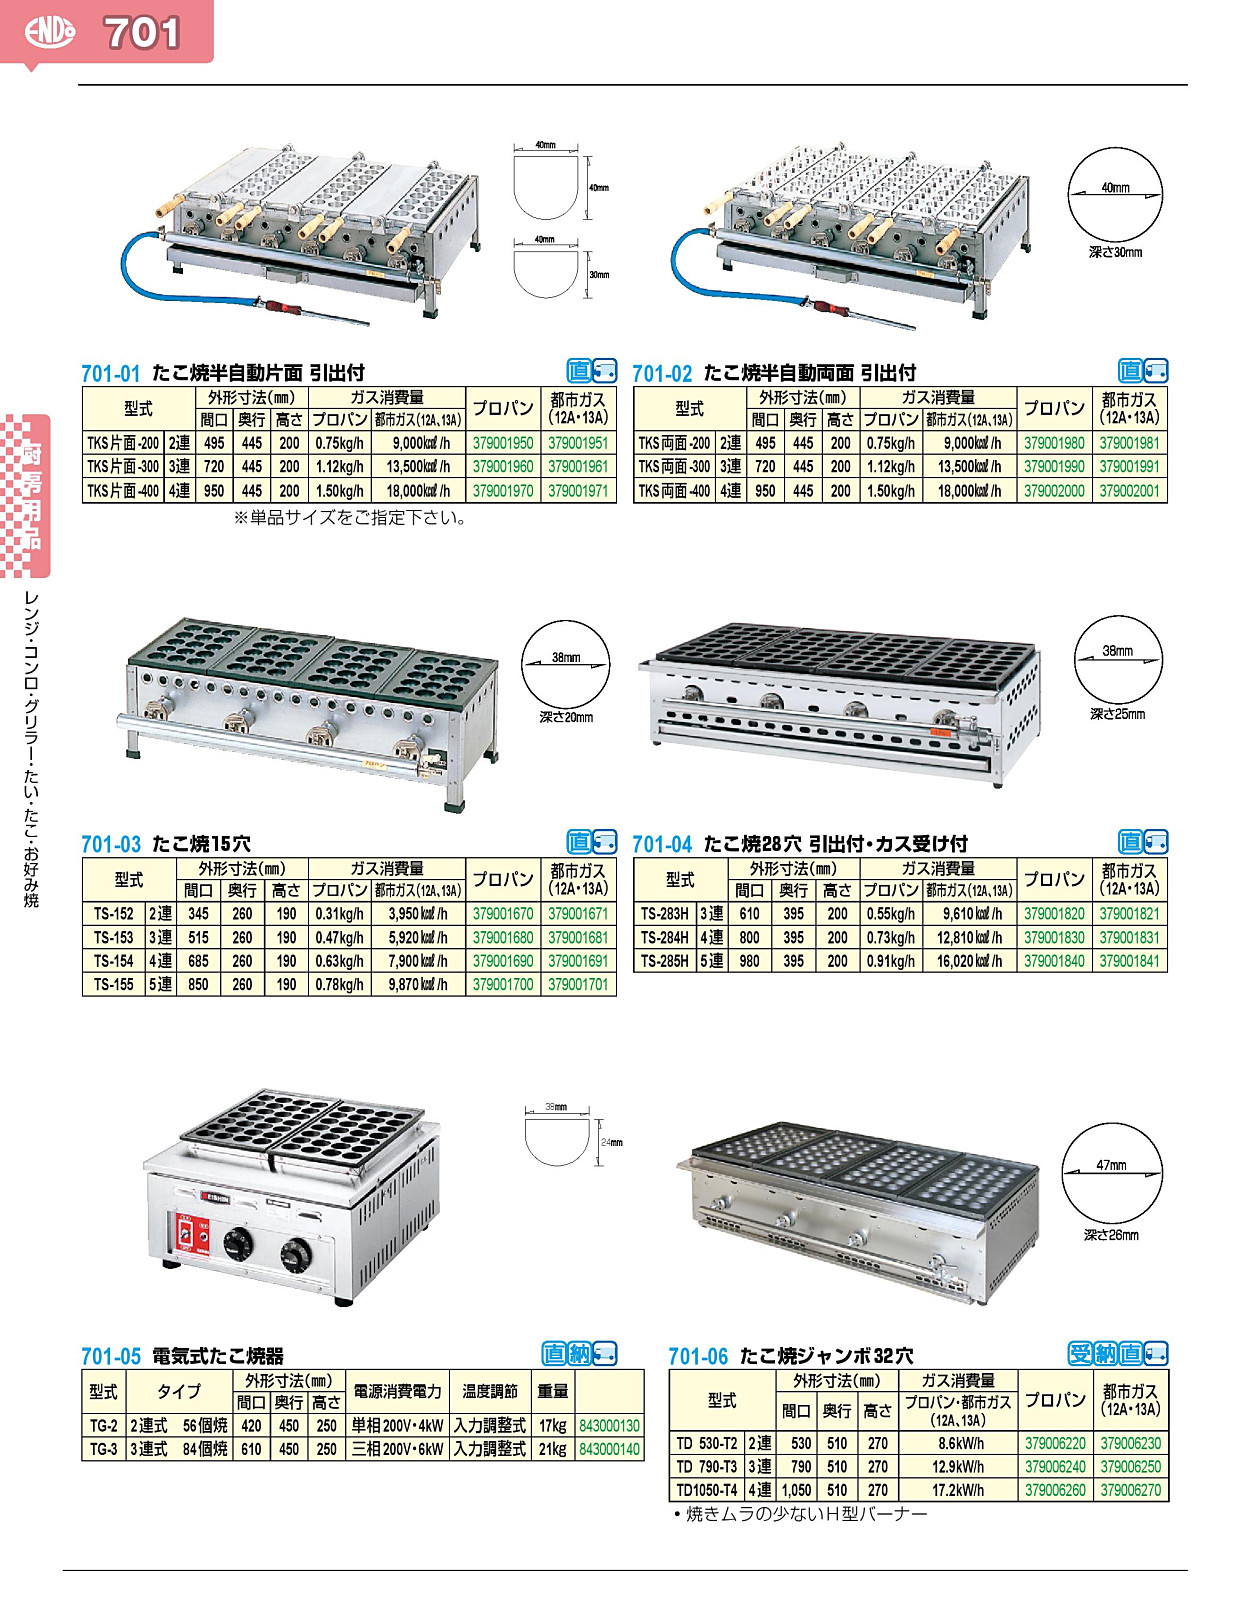 701-05 電気式たこ焼器 TG-3 3連式 84個焼 843000140 - 業務用調理器具